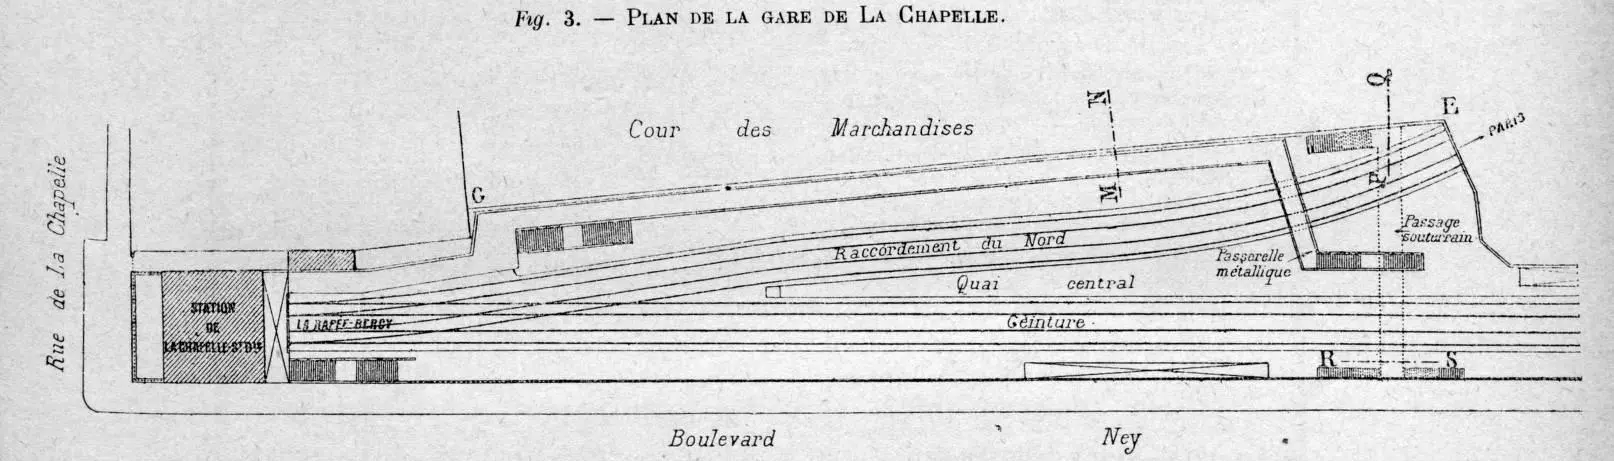 Plan des installations de la station La Chapelle-Saint Denis à partir de 1893 